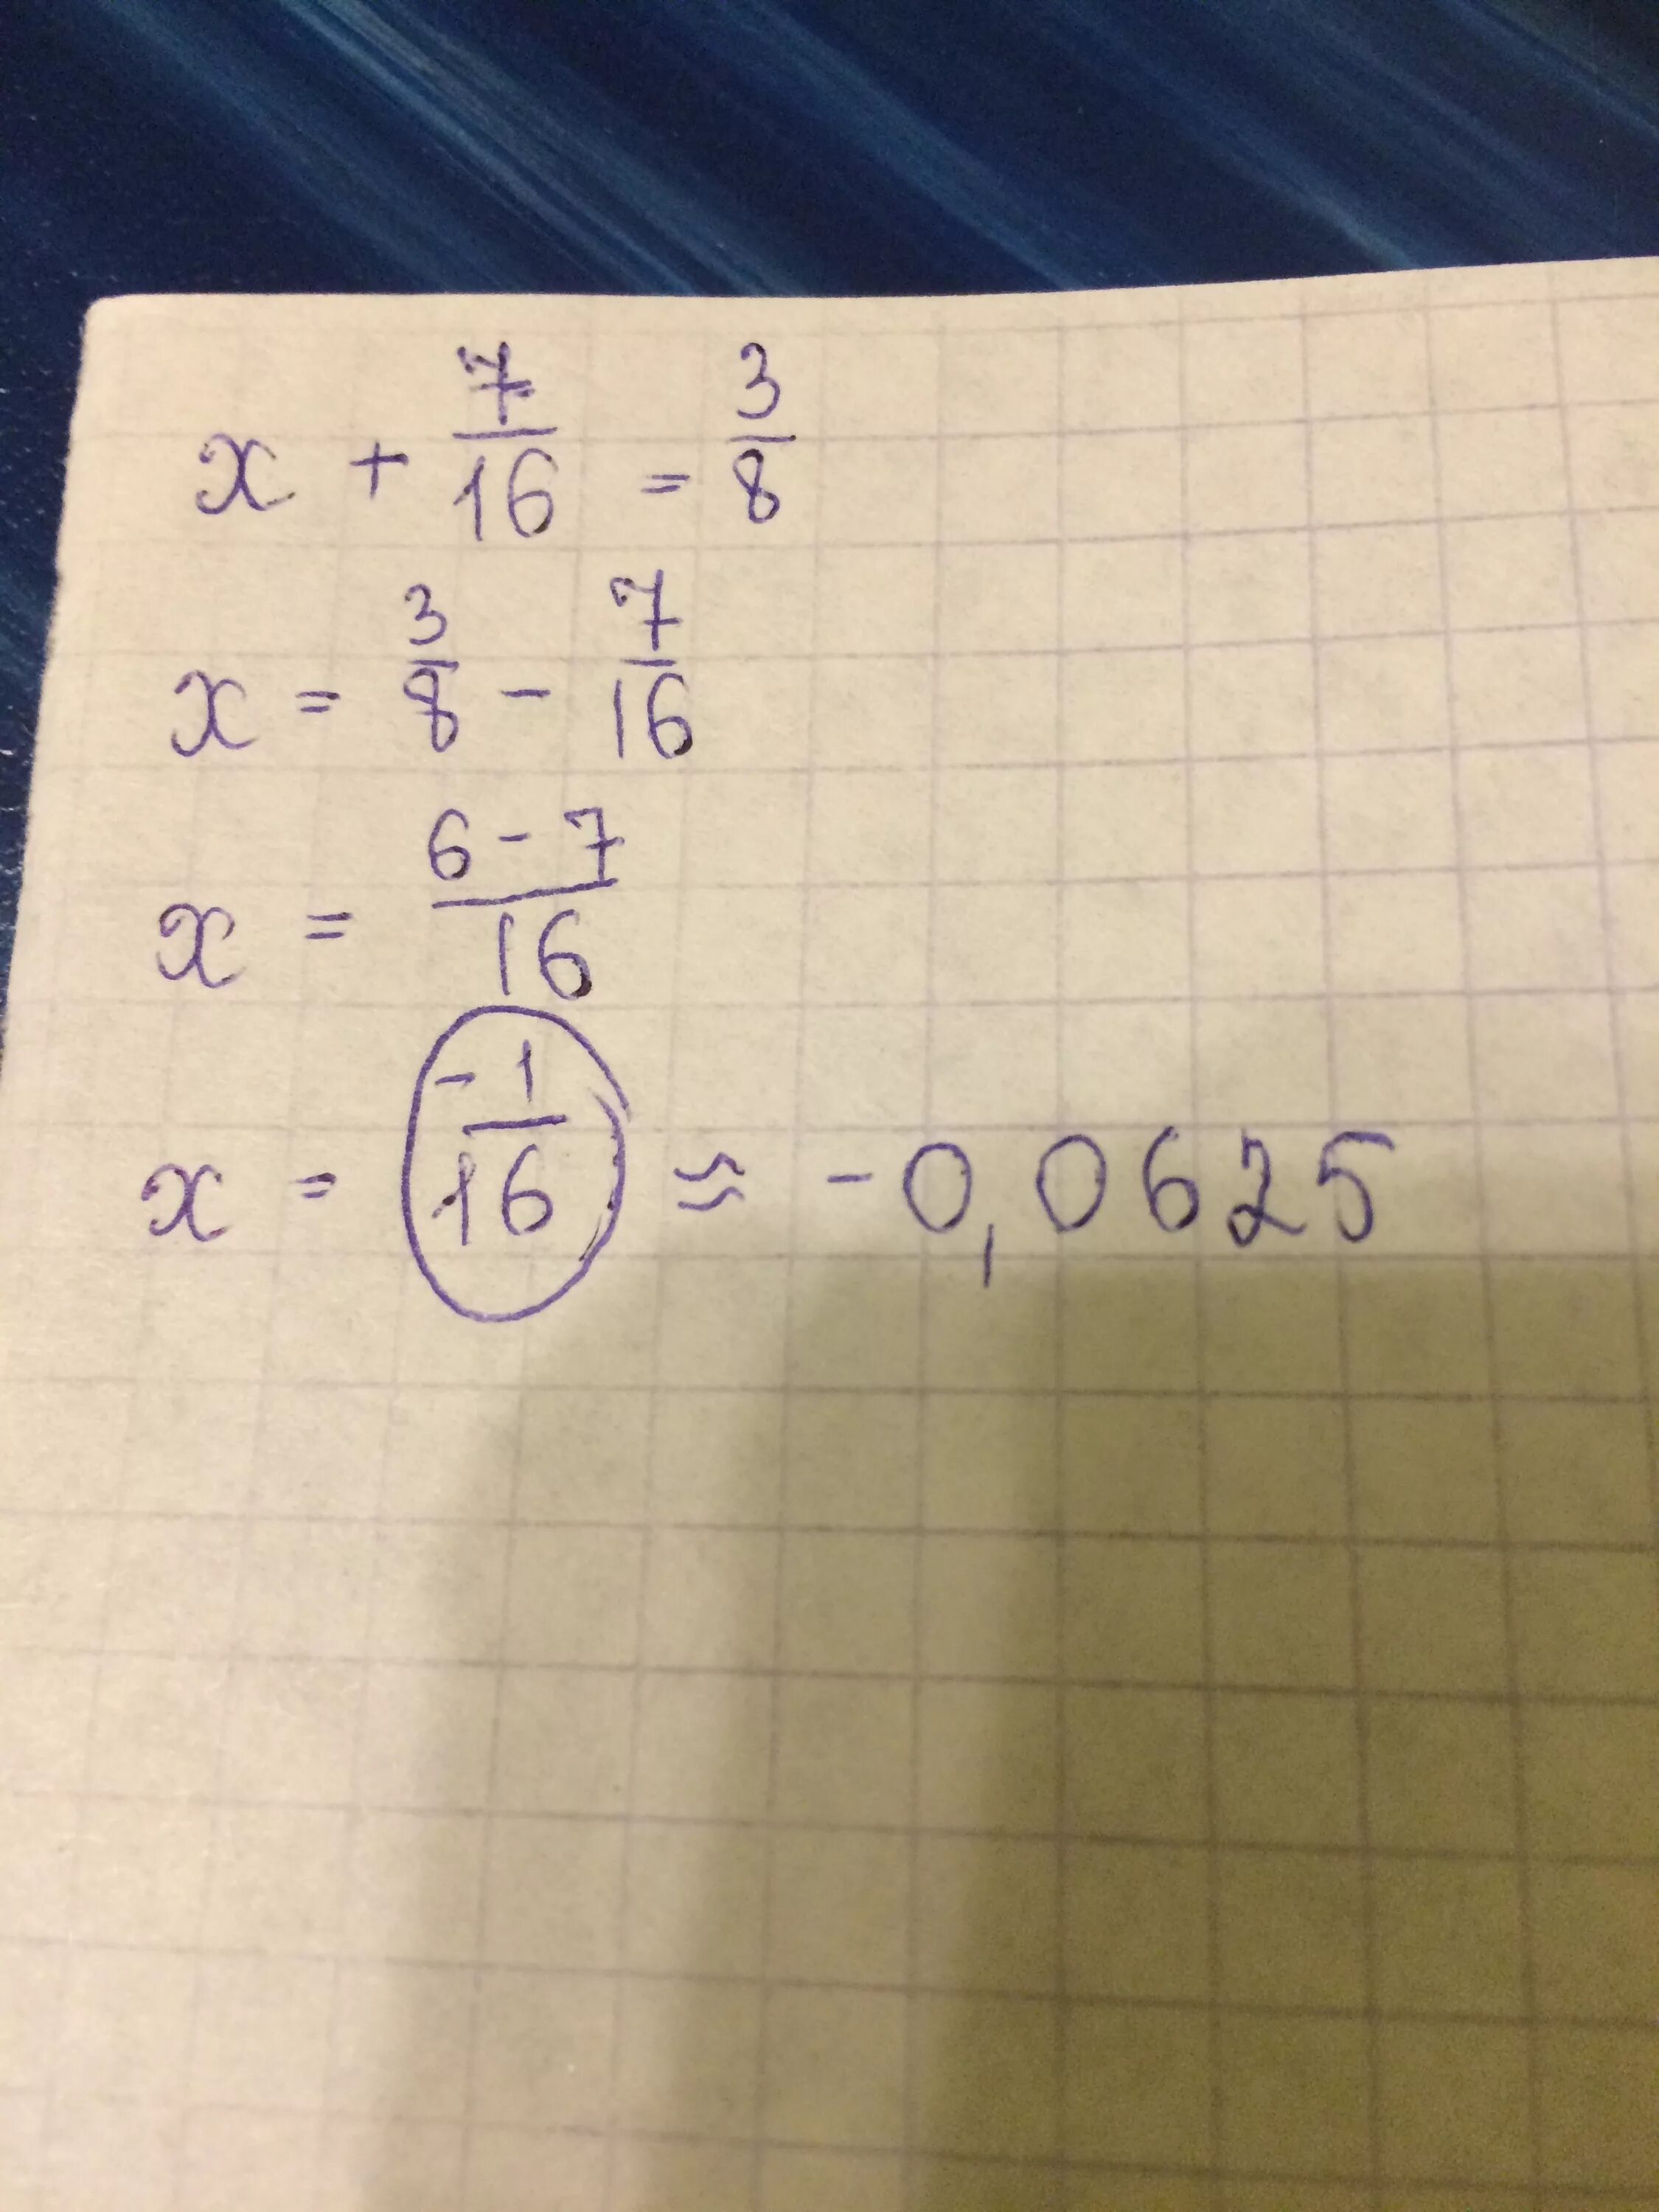 6х 7 8 3х. 7х=3а+16,8. X+7/16=3/8. X+7=16. (√7-3)Х>16-6√7.